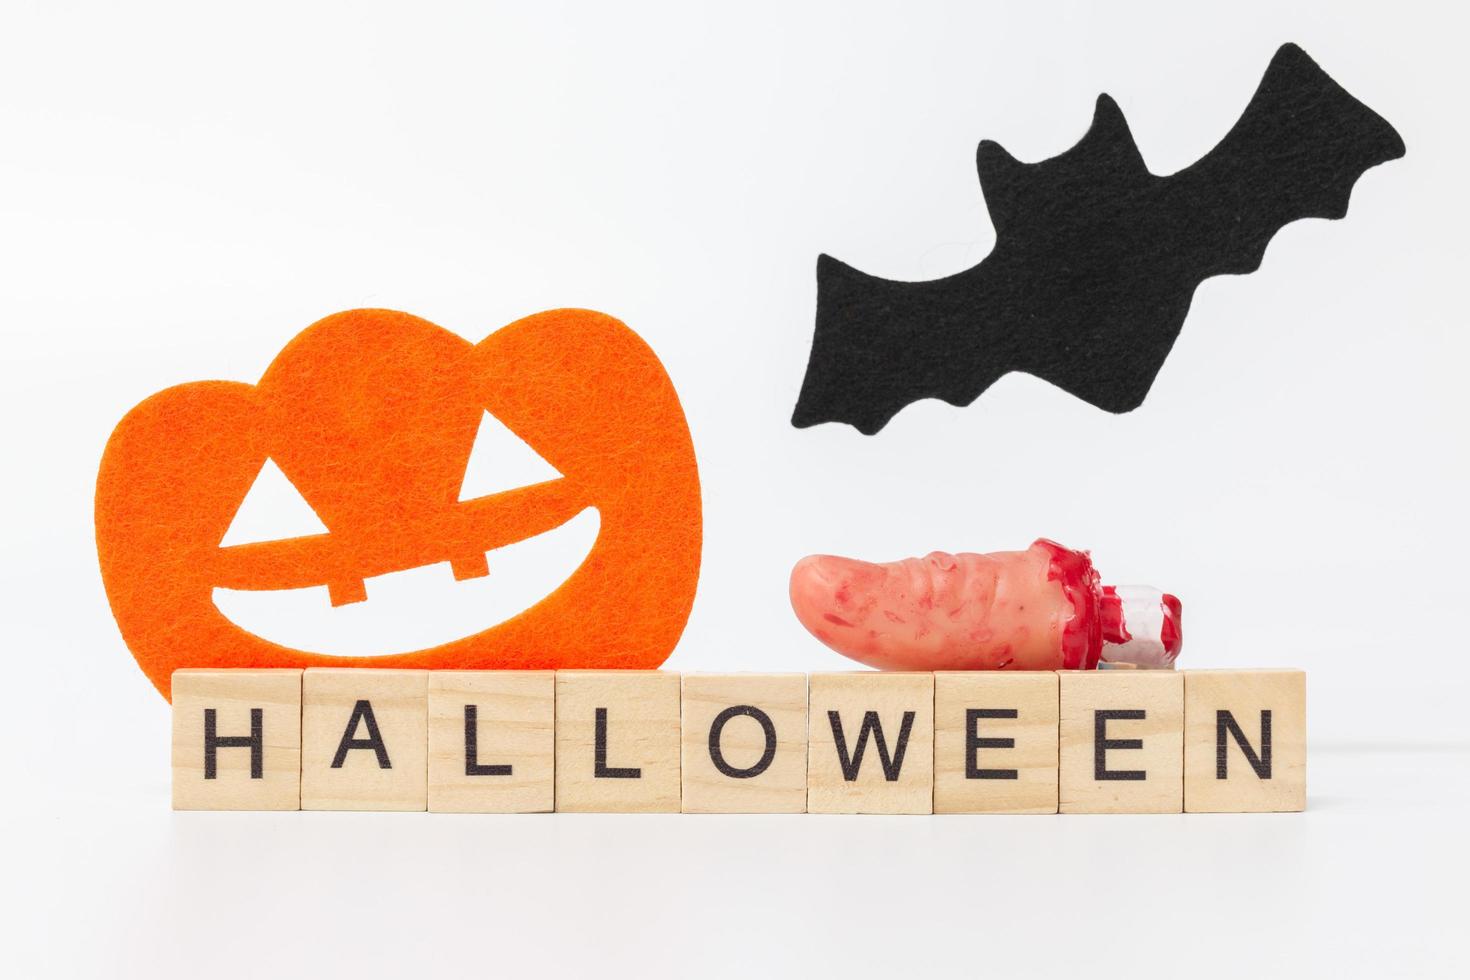 adereços de festa de halloween com blocos de madeira com o texto halloween em um fundo branco foto